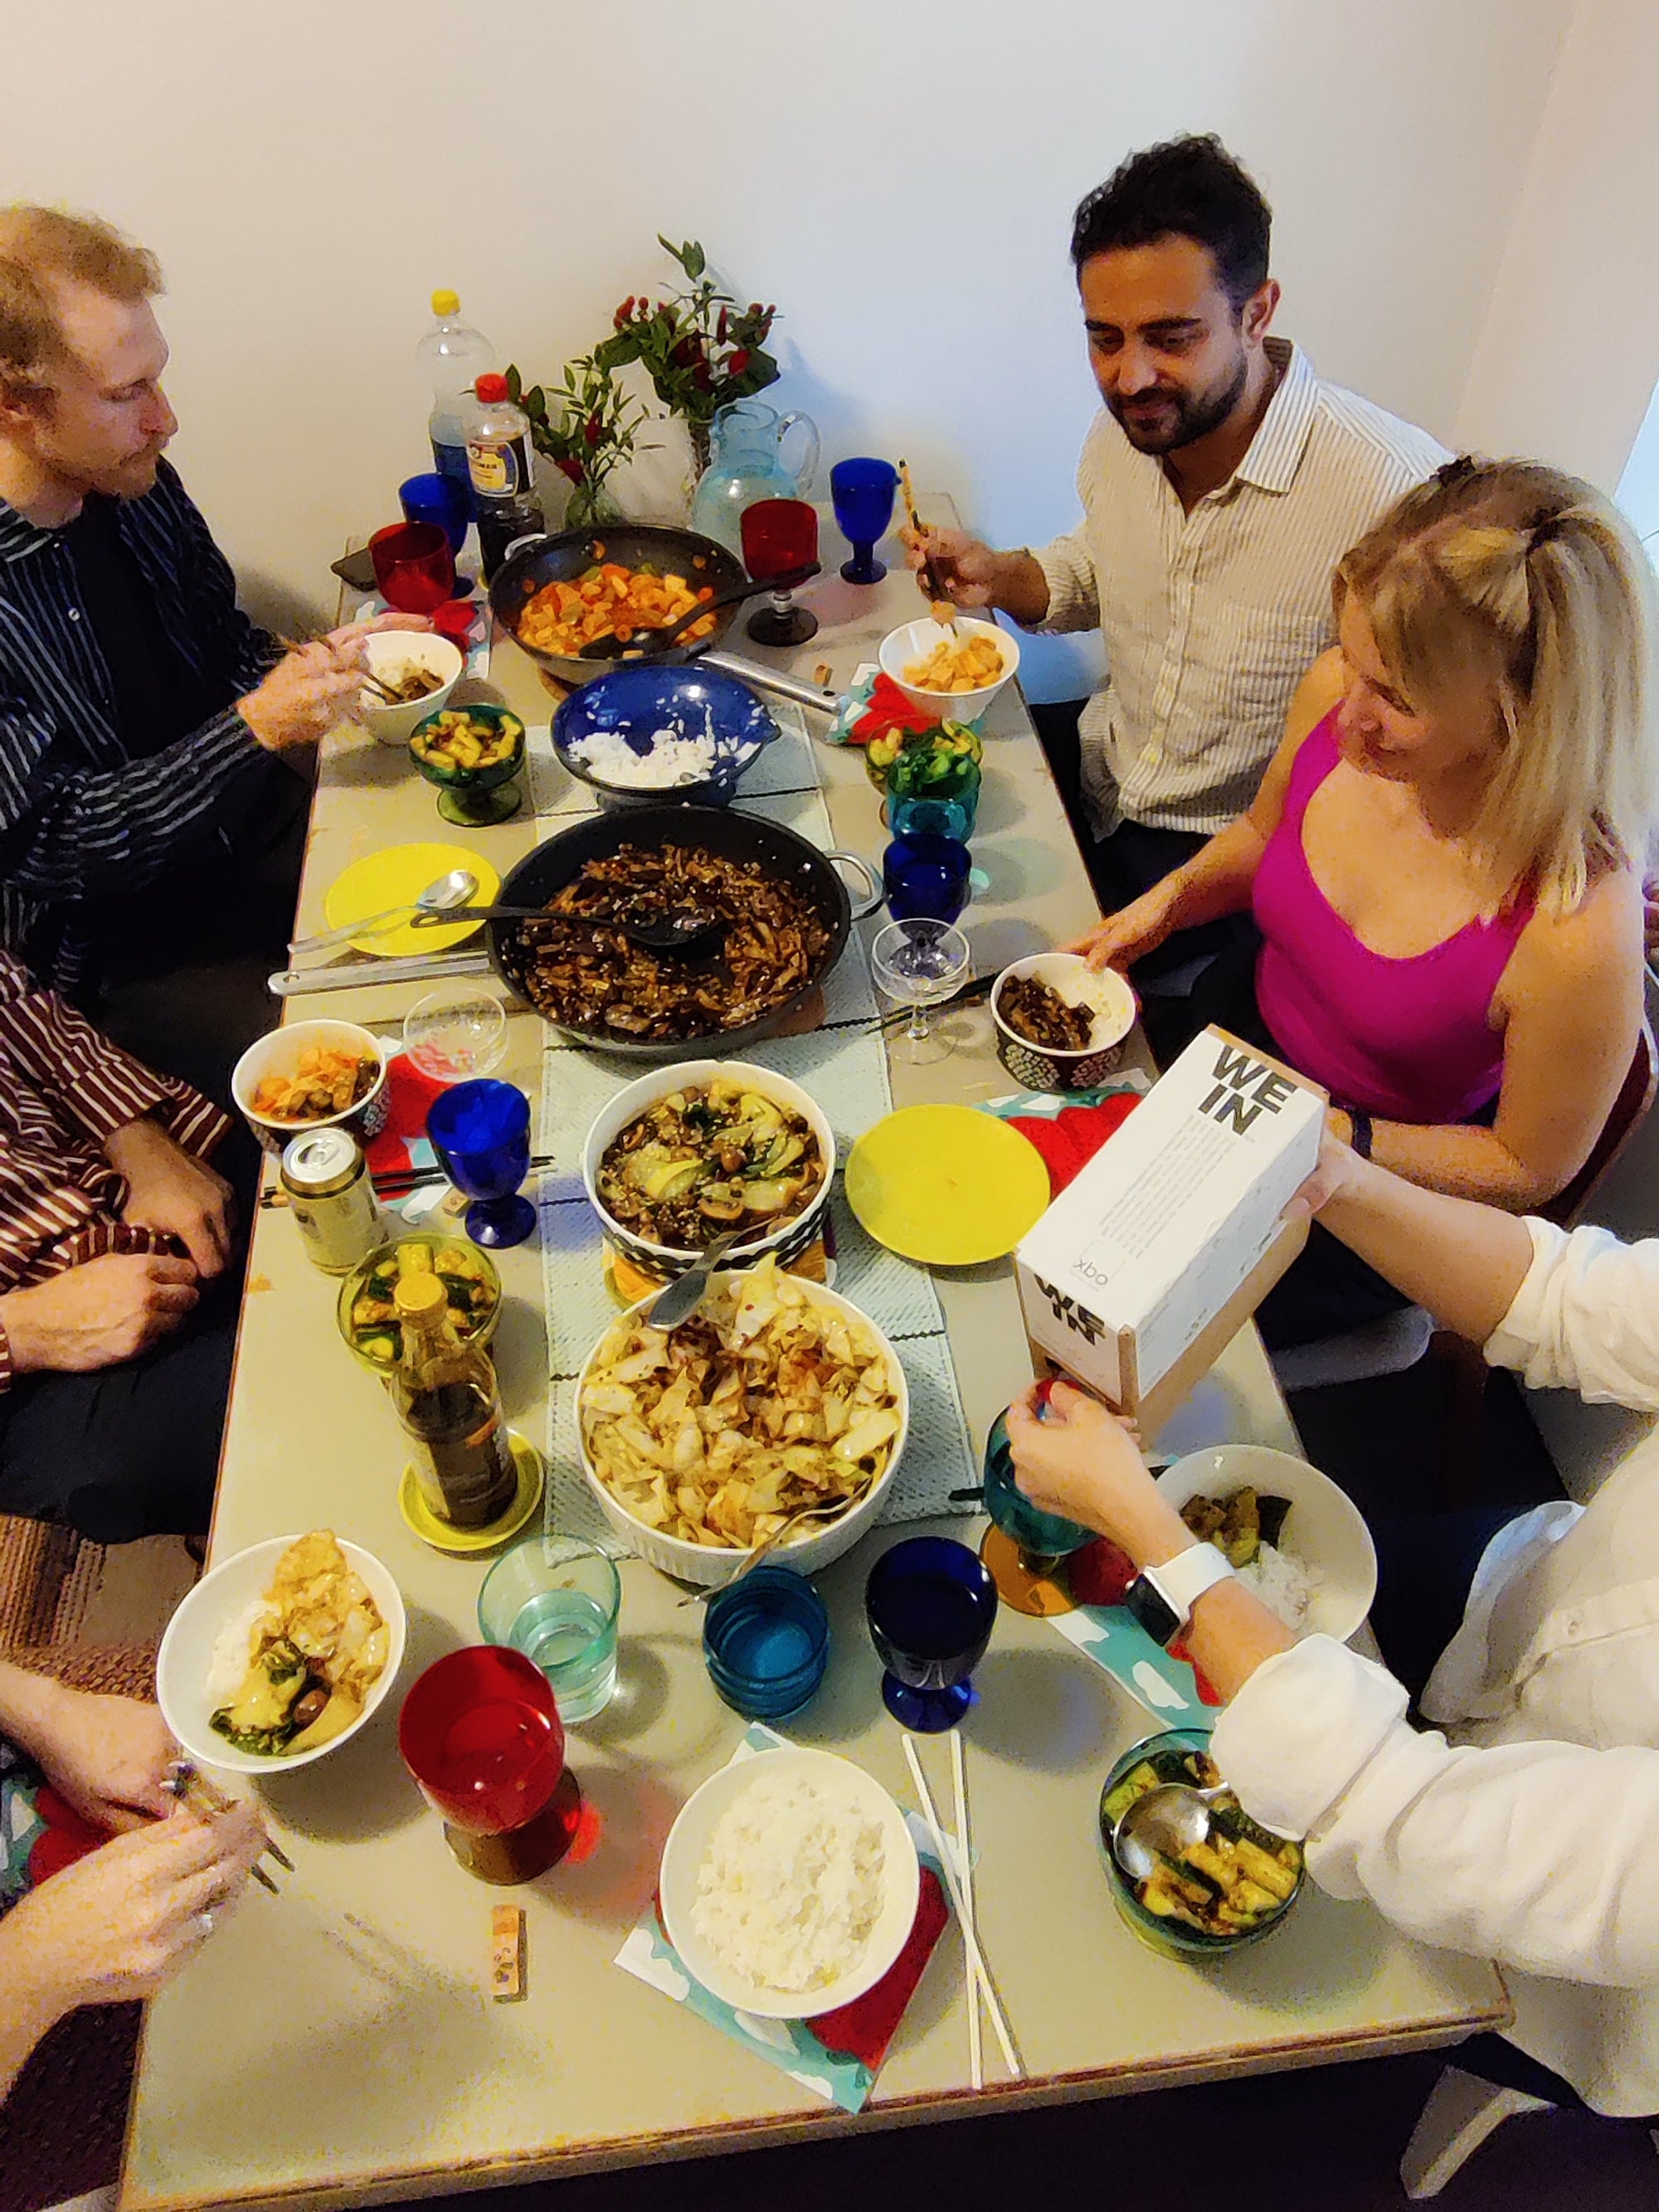 Gruppe von jungen Menschen sitzt zusammen an einem reichlich gedeckten Tisch. Sie genießen gute Speisen, Bag-in-Box Wein und freuen sich beim Zusammensein.